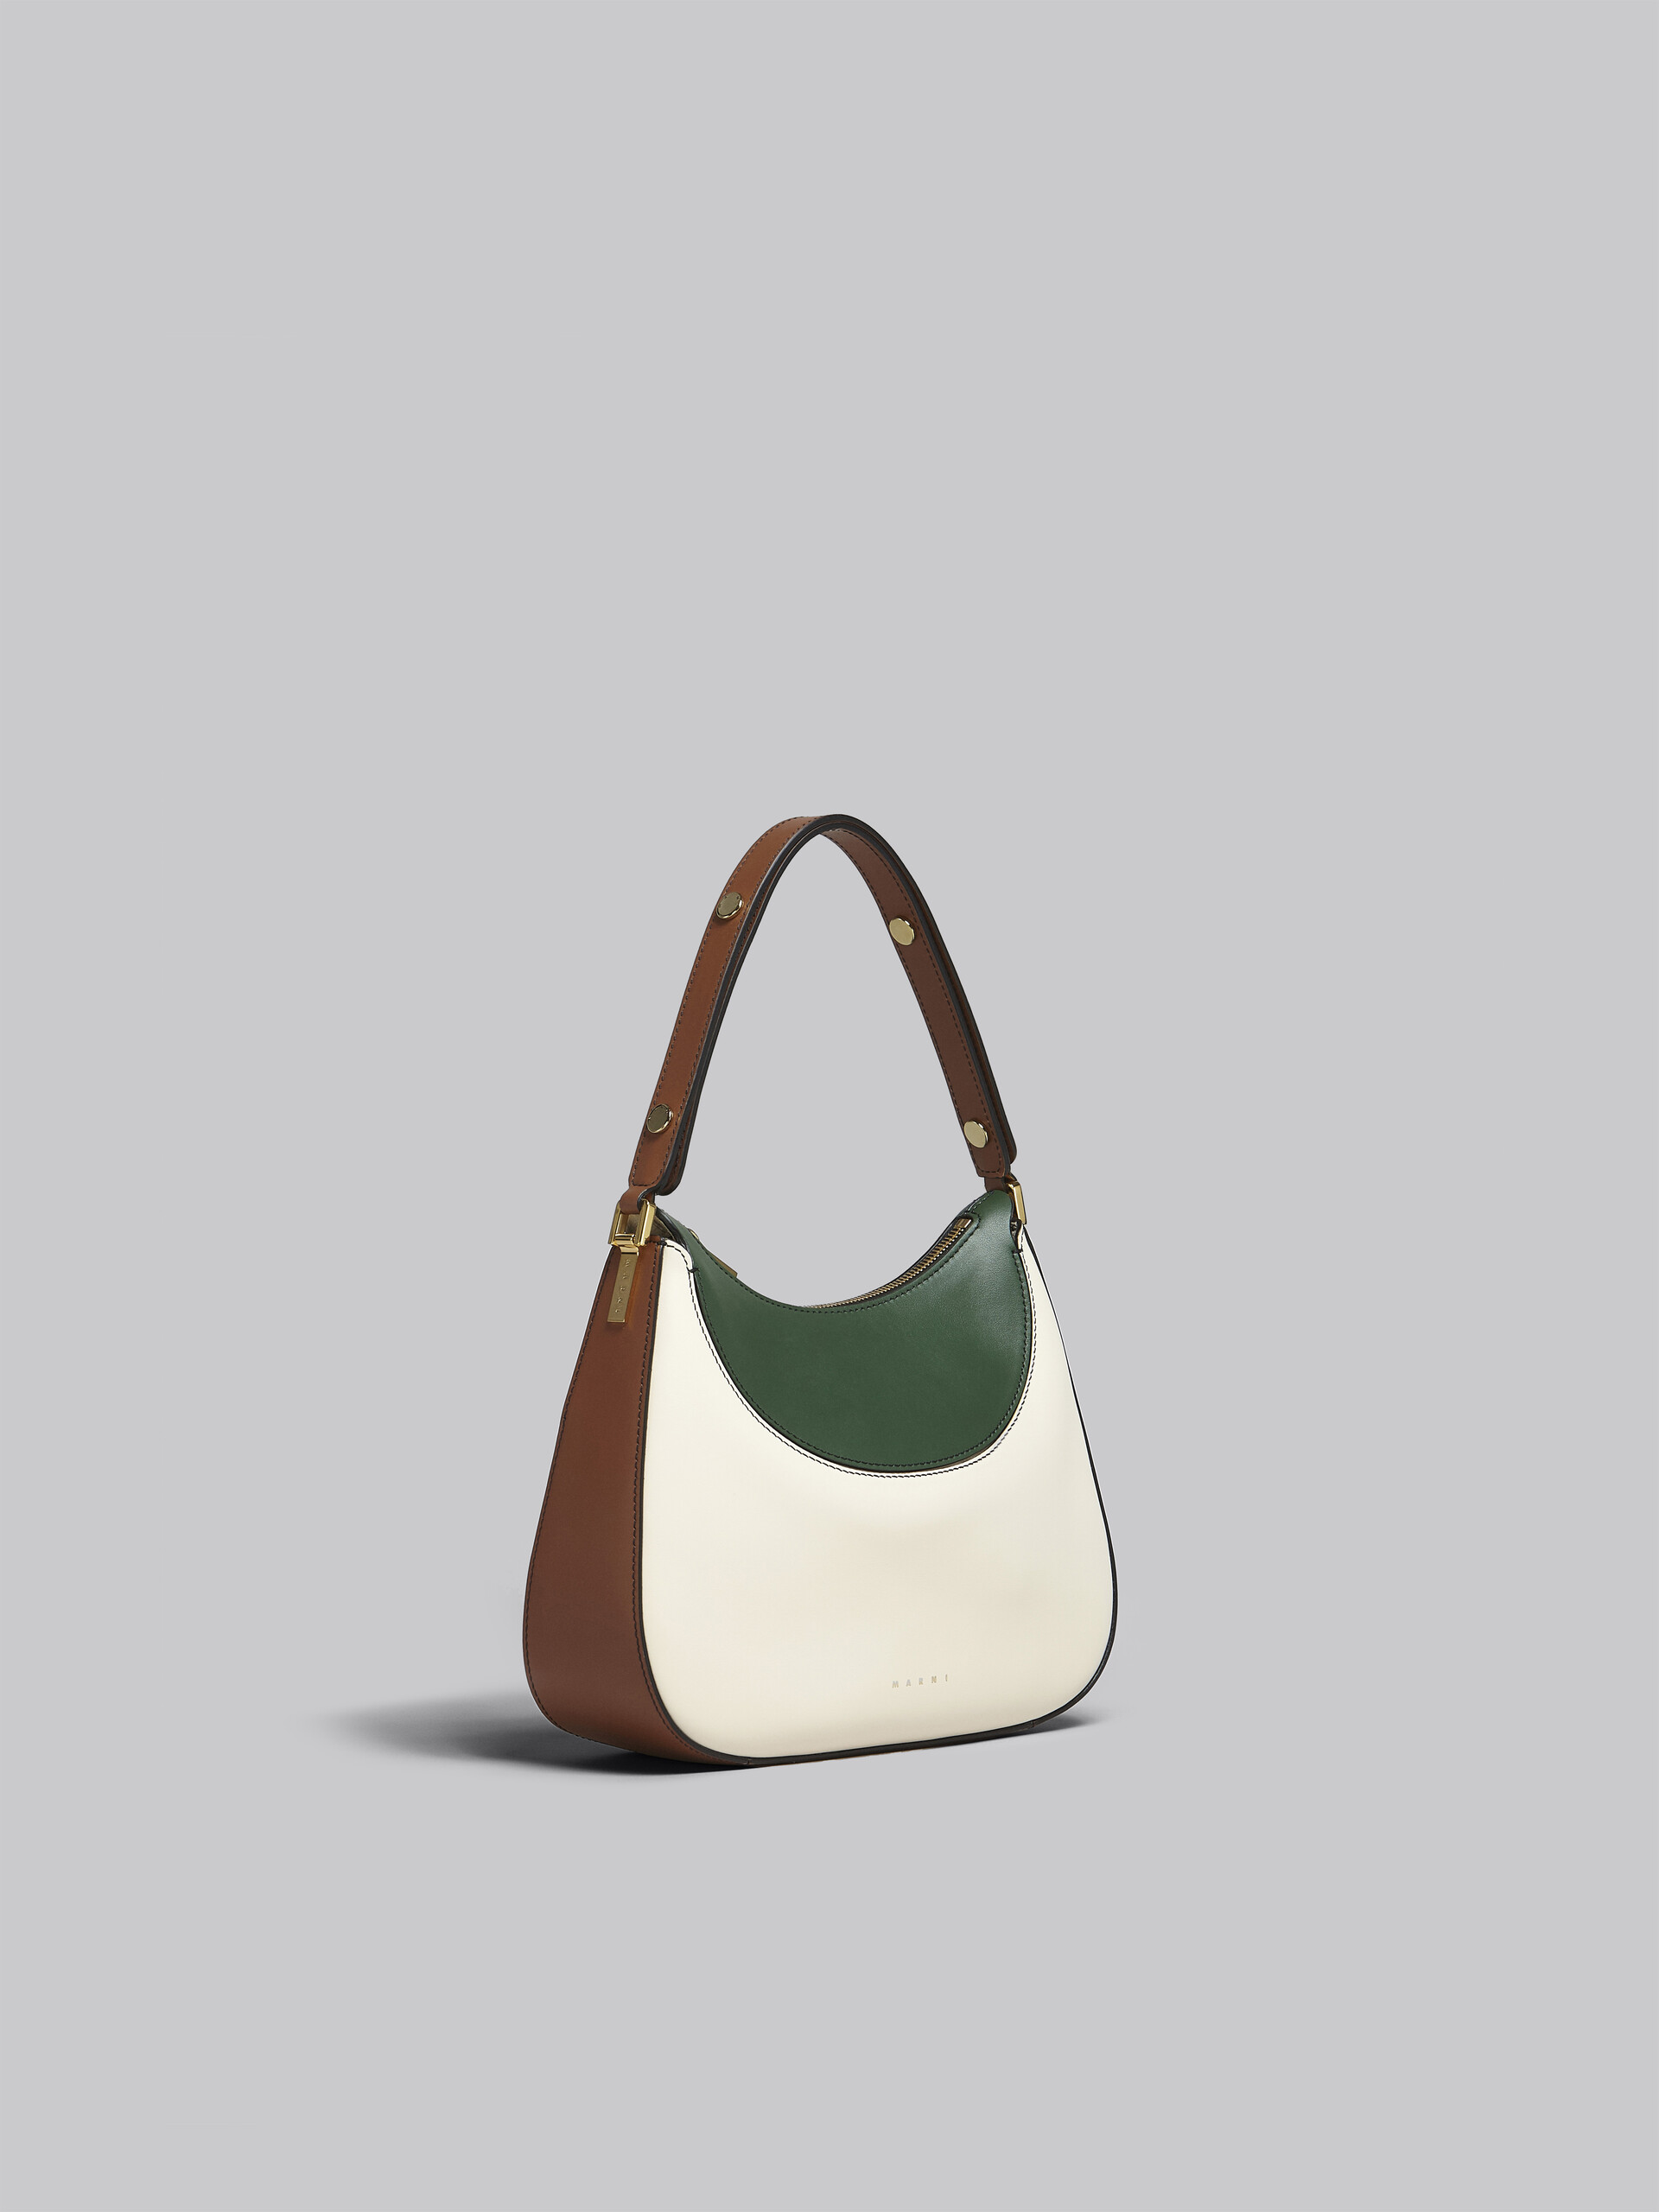 Petit sac Milano en cuir blanc, marron et vert - Sacs à main - Image 6